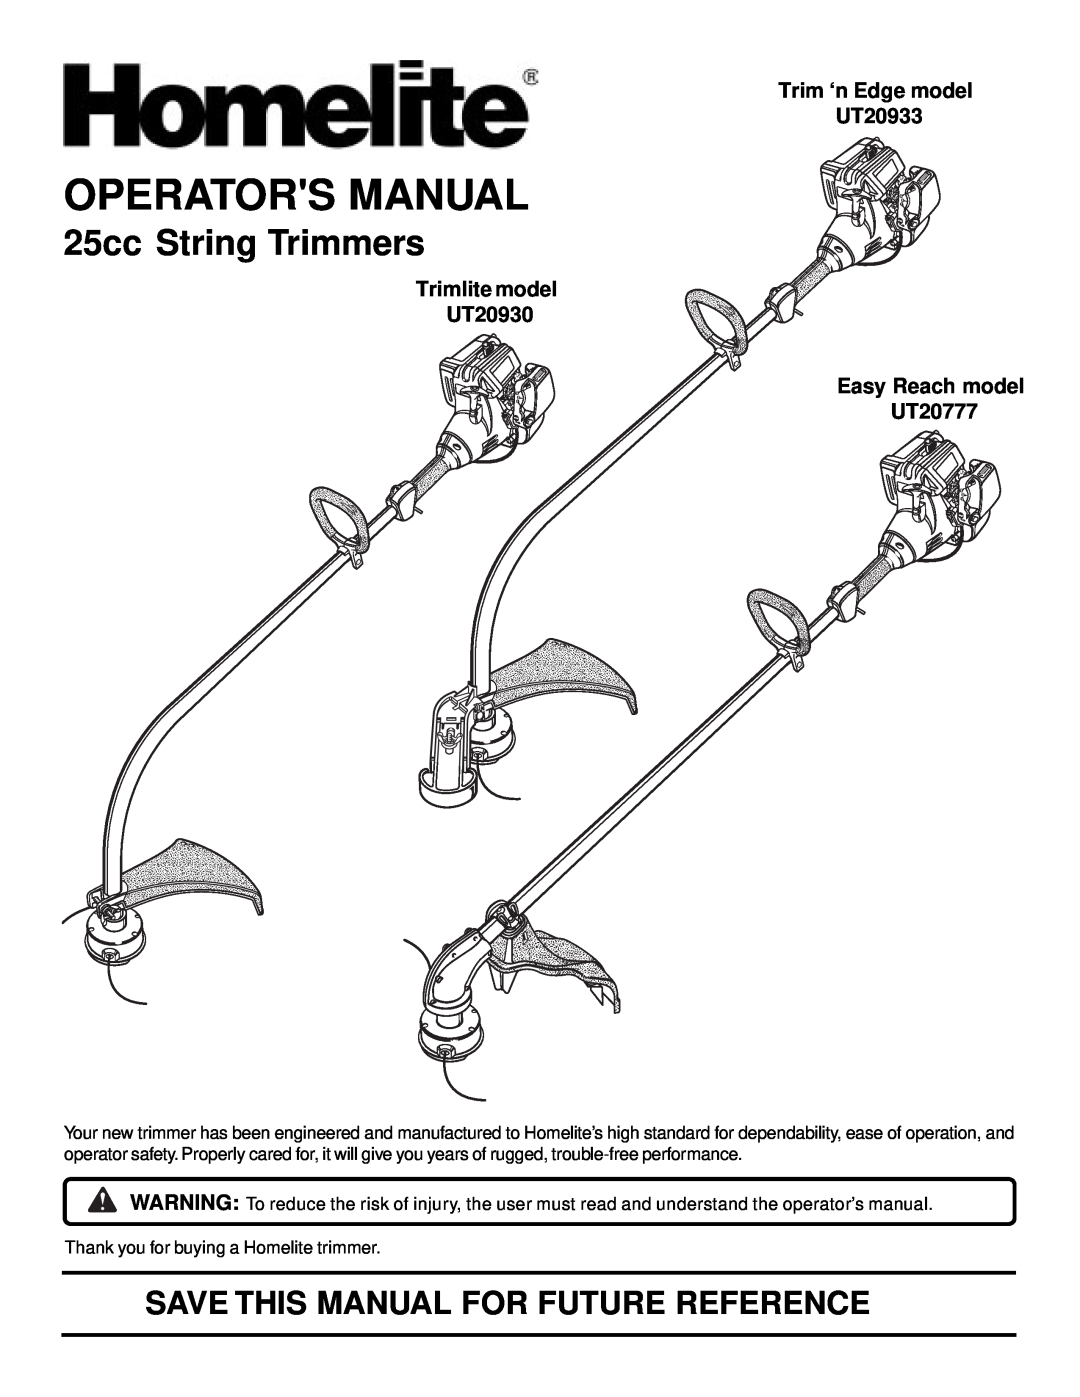 Homelite manual Operators Manual, 25cc String Trimmers, Trimlite model UT20930, Trim ‘n Edge model UT20933 